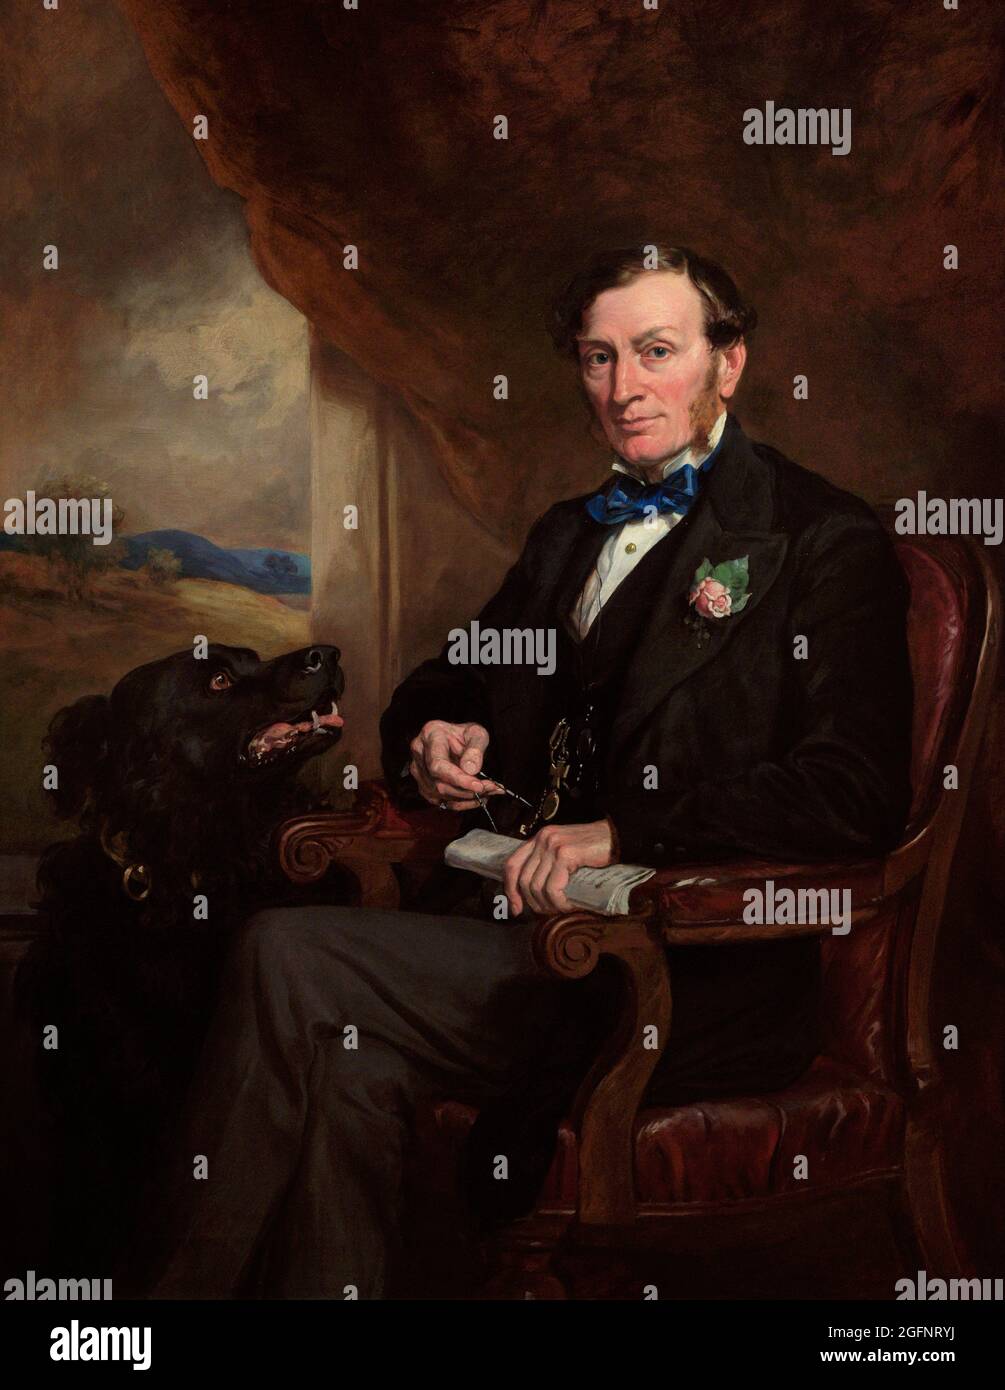 Sir Daniel Gooch (1816-1889), 1st Baronet. Ingeniero ferroviario británico. Retrato de Francis Grant (1803-1878). Óleo sobre lienzo (142,2 x 111,8 cm), 1872. Galería Nacional de Retratos. Londres, Inglaterra, Reino Unido. Foto de stock